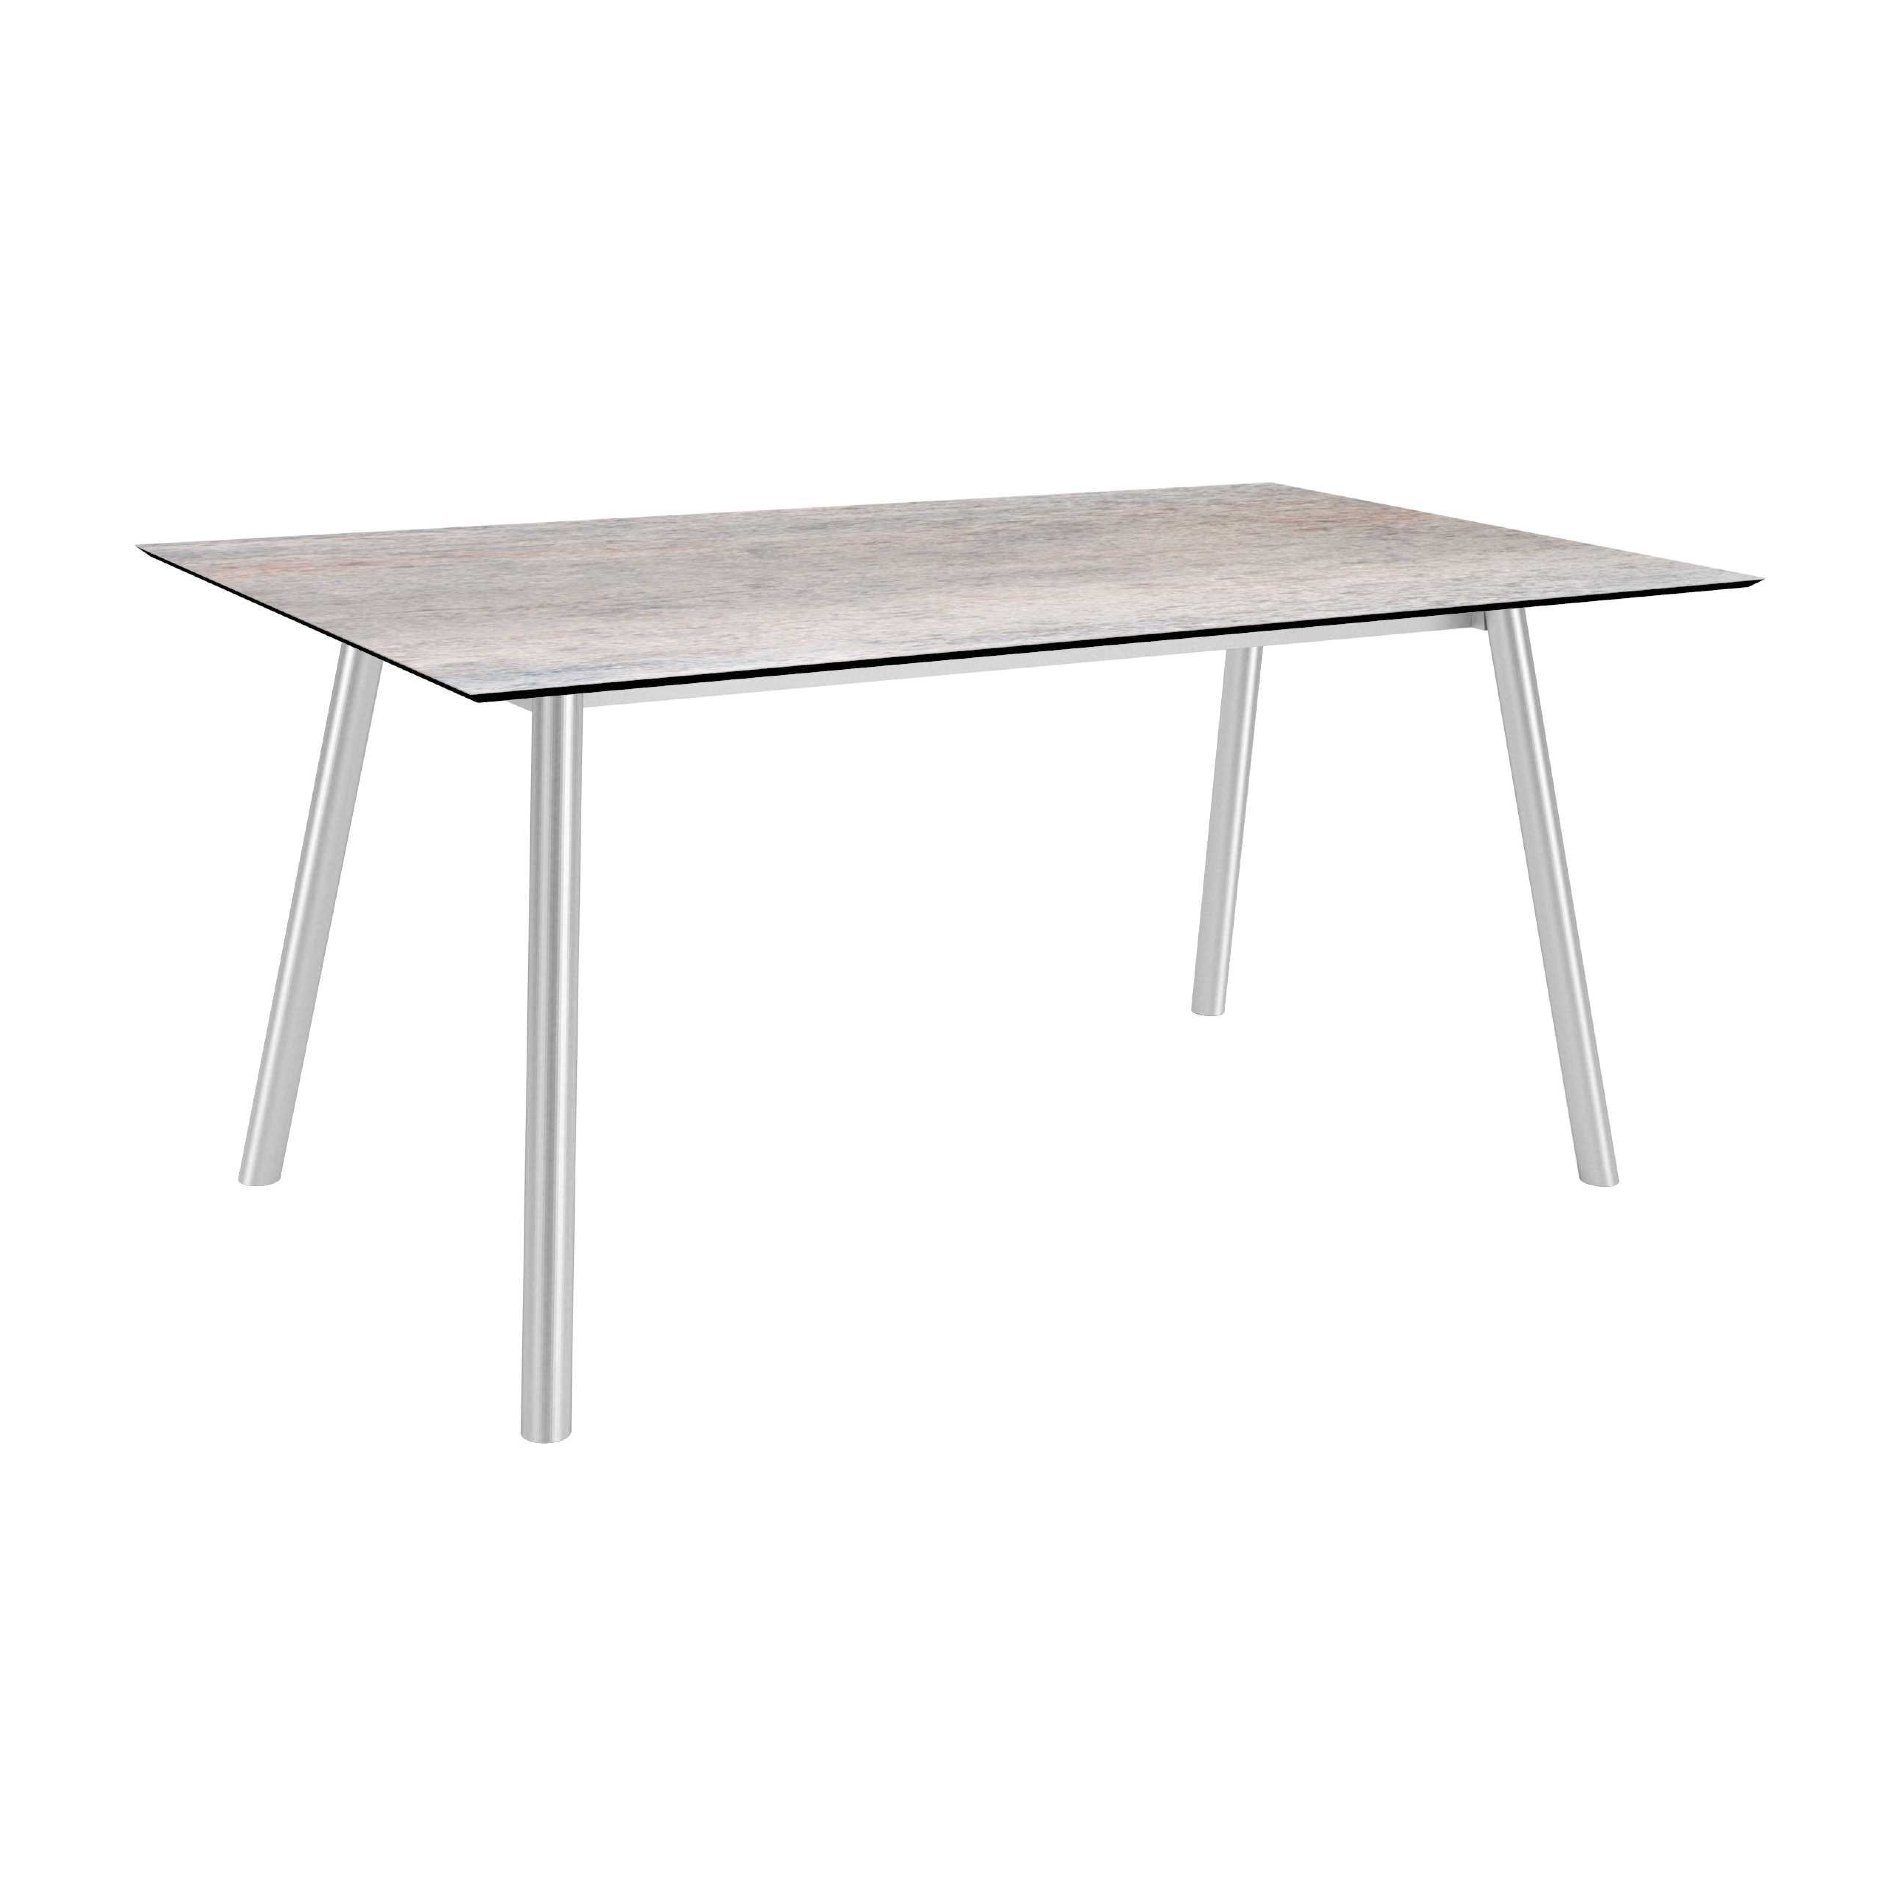 Stern Tisch "Interno", Größe 180x100cm, Edelstahl, Rundrohr, Tischplatte HPL Smoky